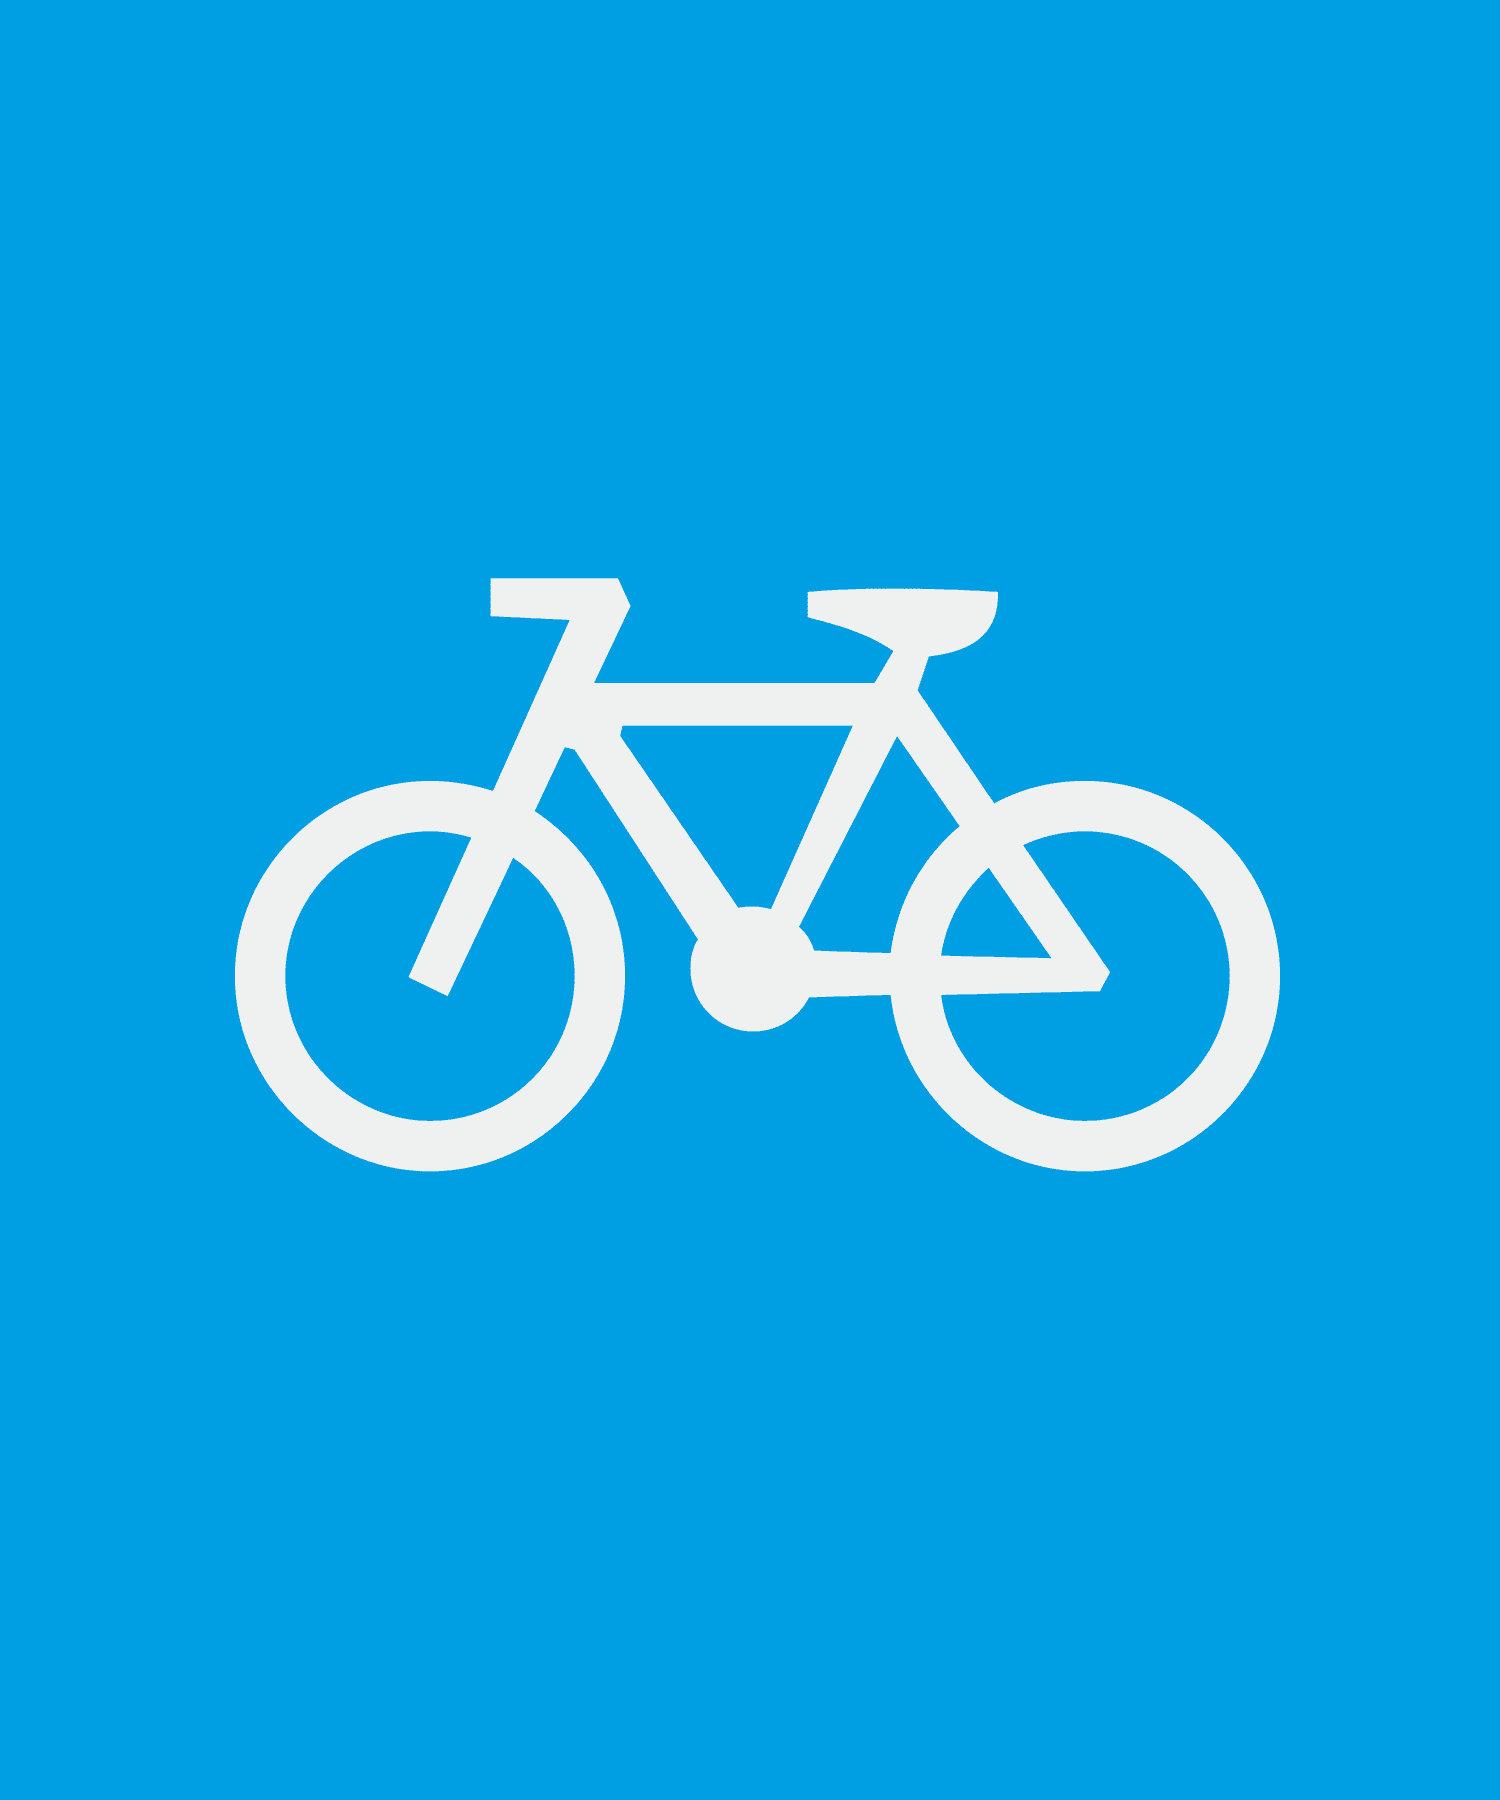 Entorno, bicycle pictogram